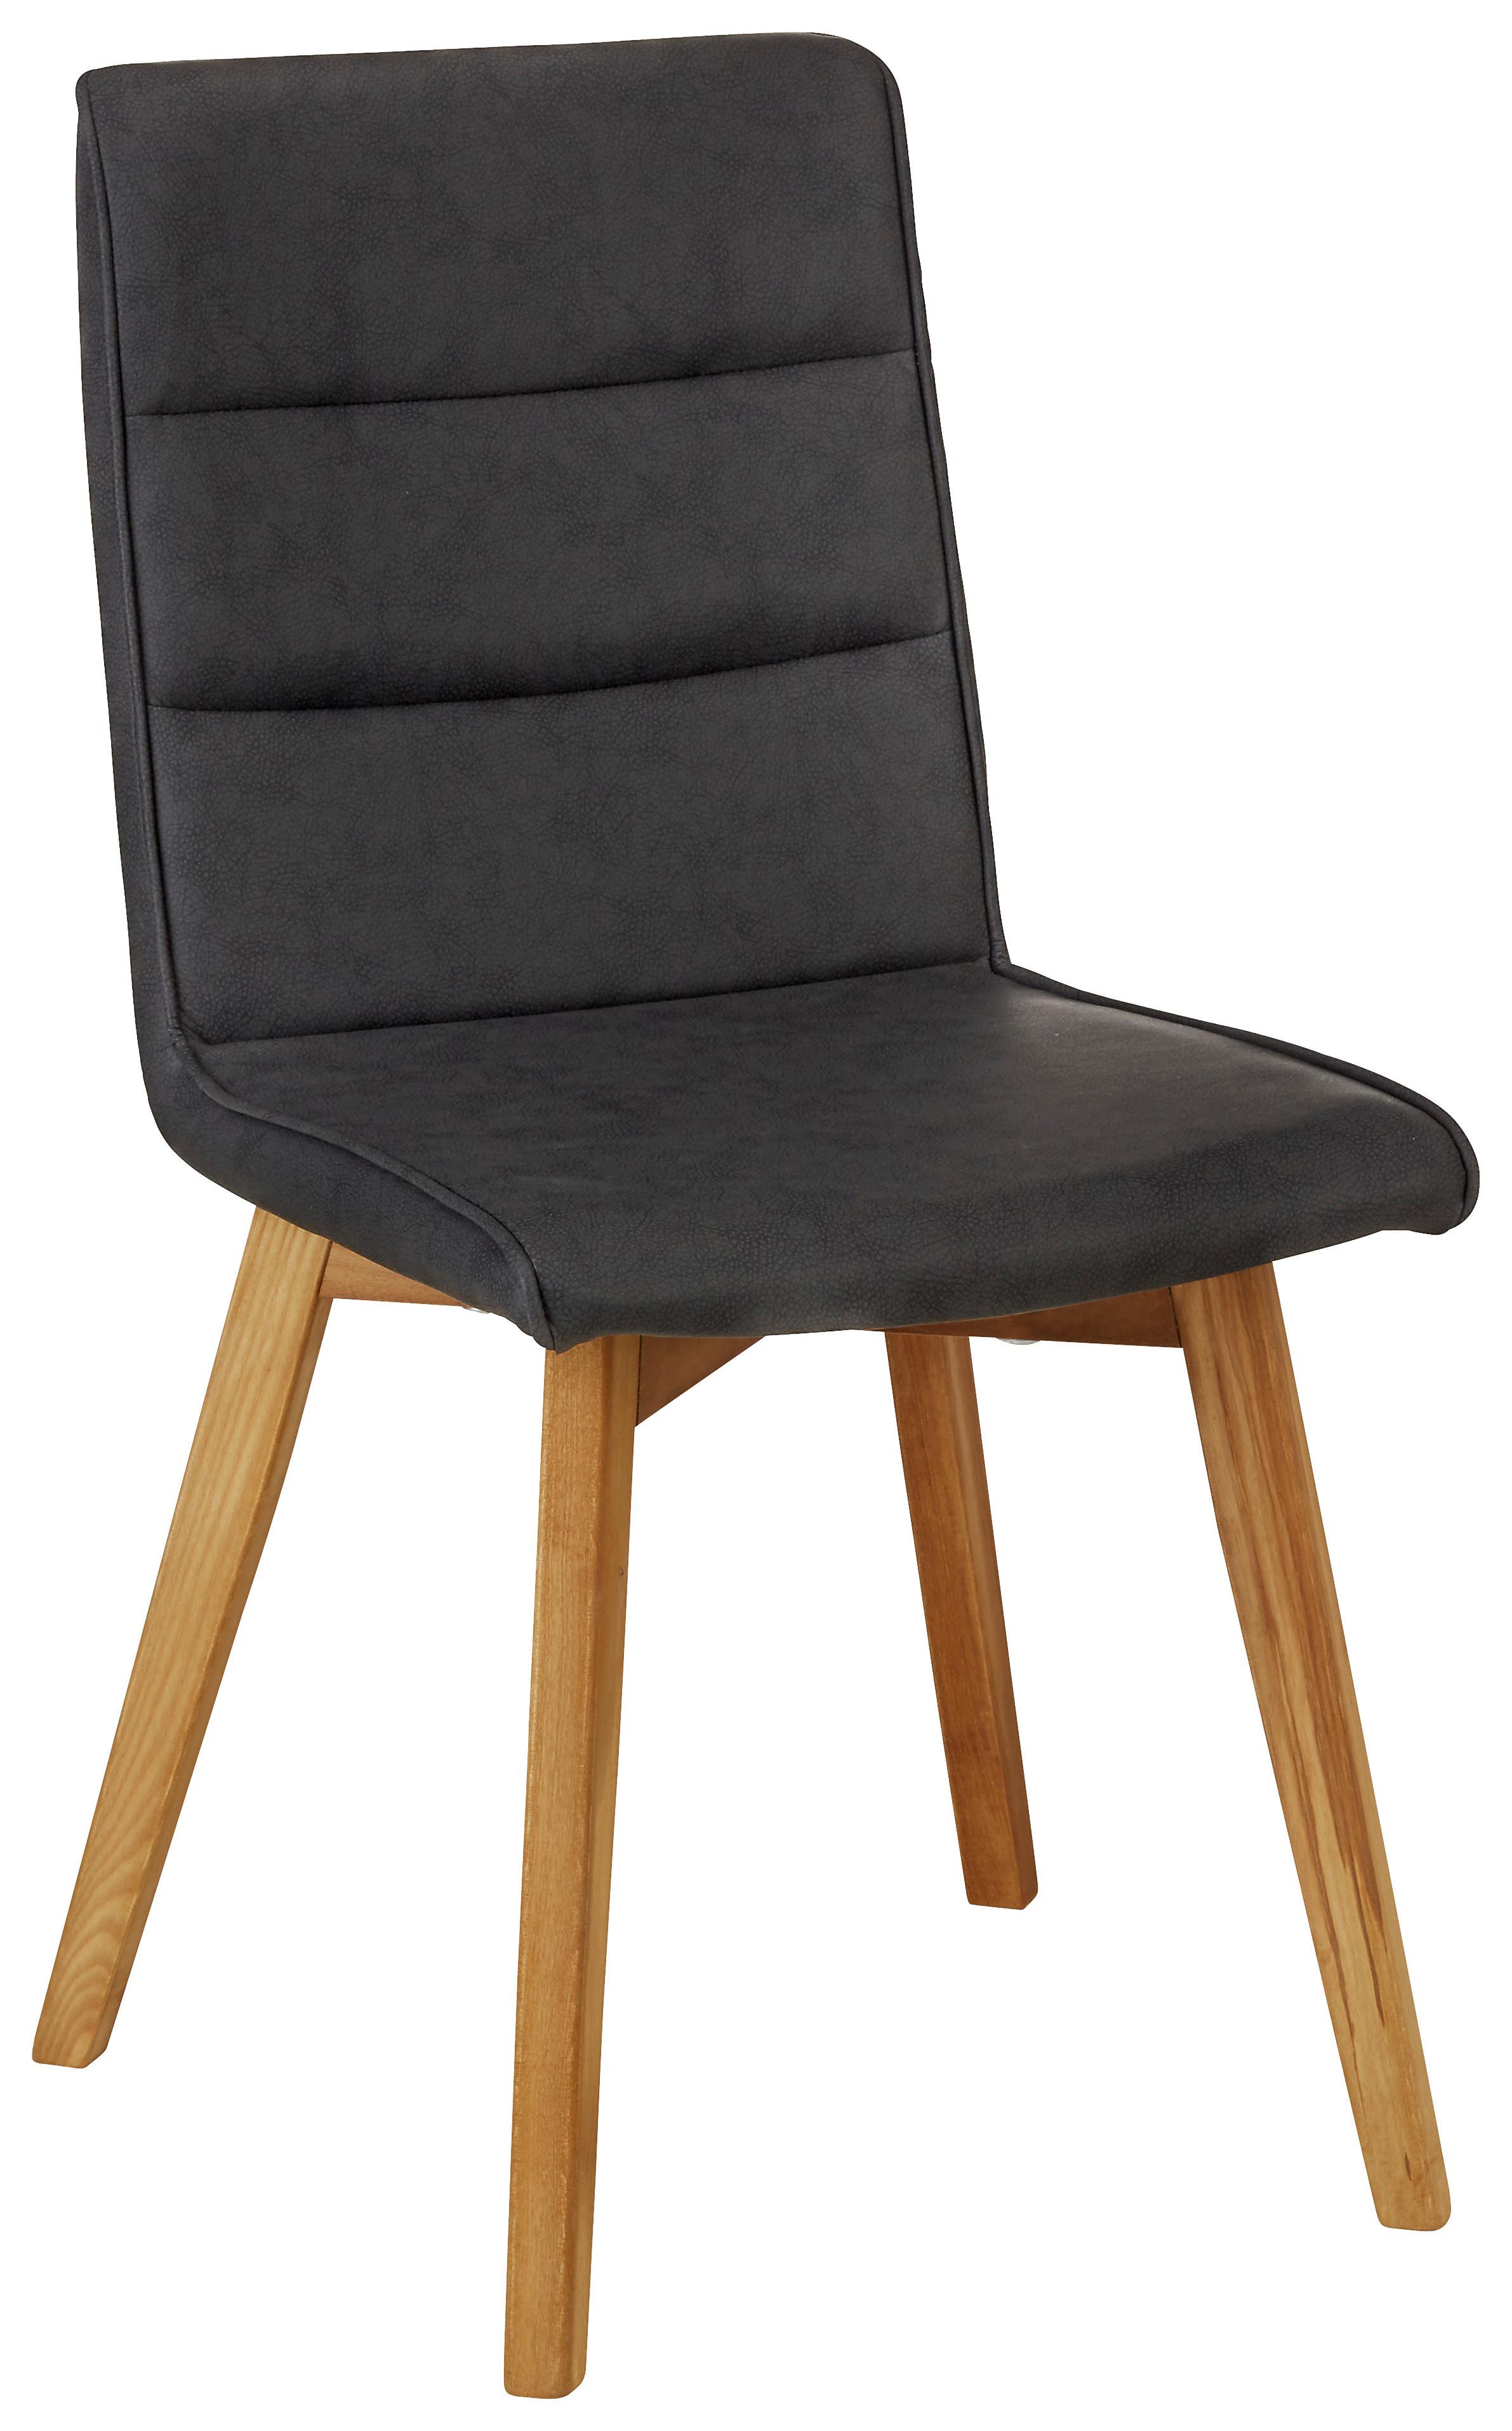 Stol Ellie -Top- - črna/barve hrasta, Moderno, tekstil/les (44/87/55,5cm) - Zandiara